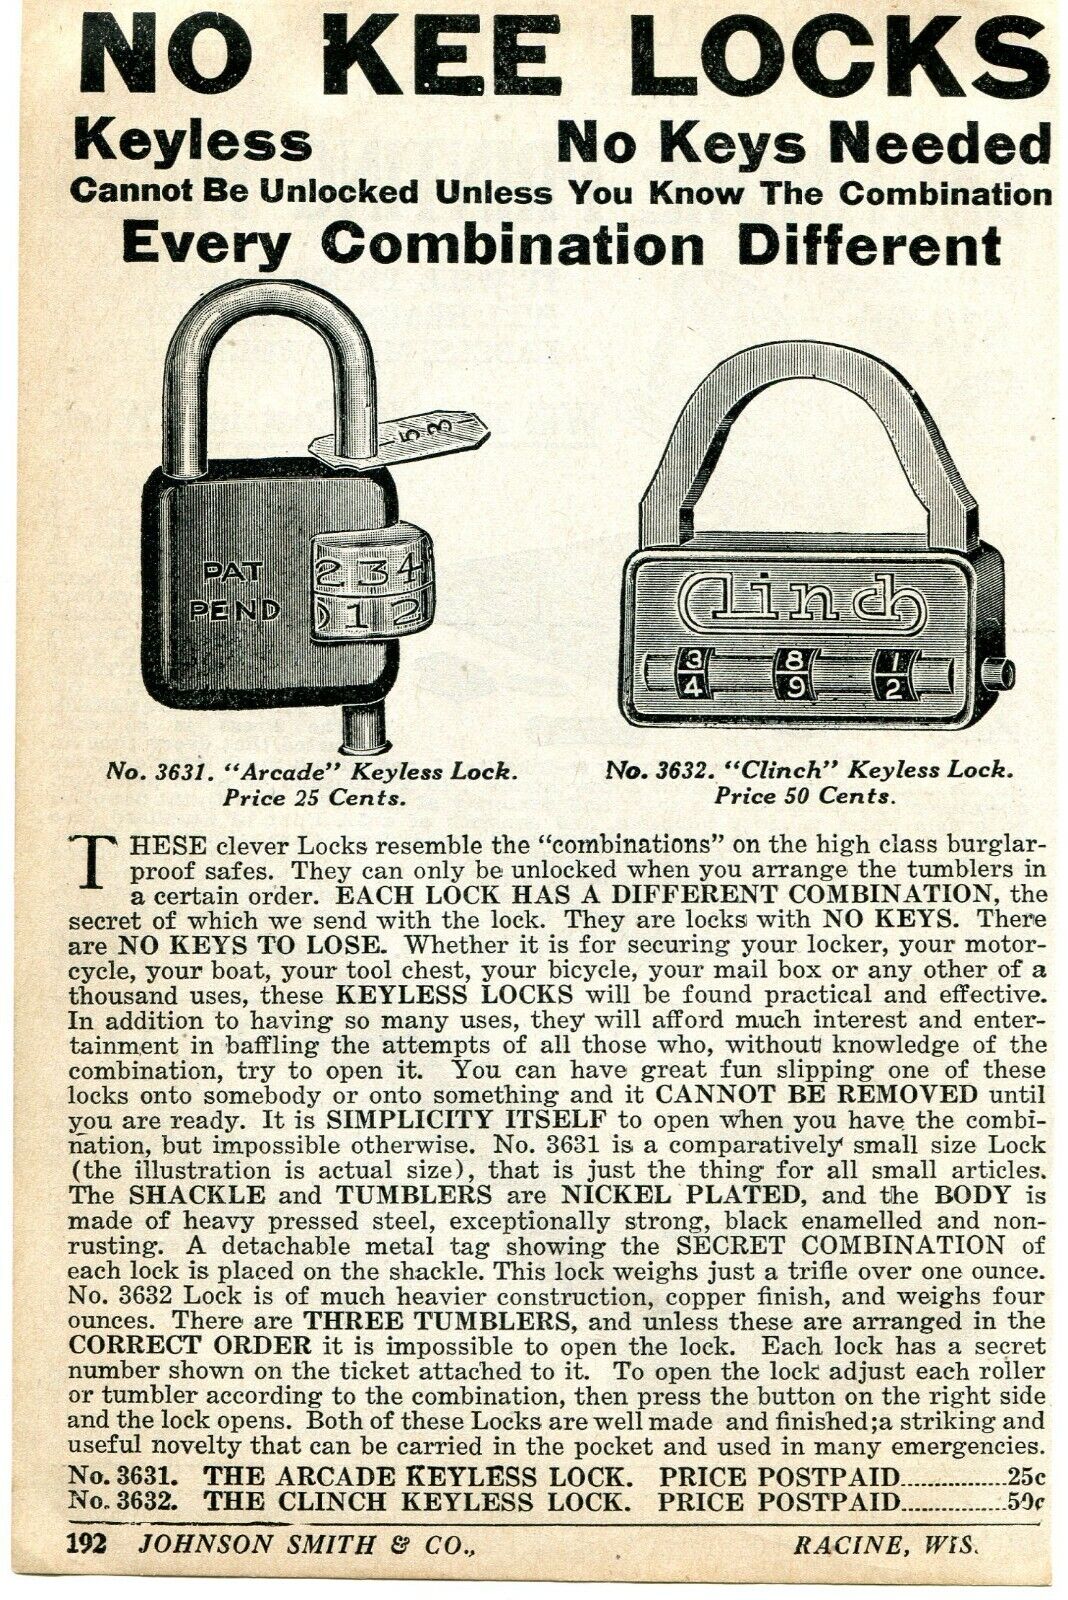 1926 small Print Ad of Arcade & Clinch Keyless No Kee Combination Locks